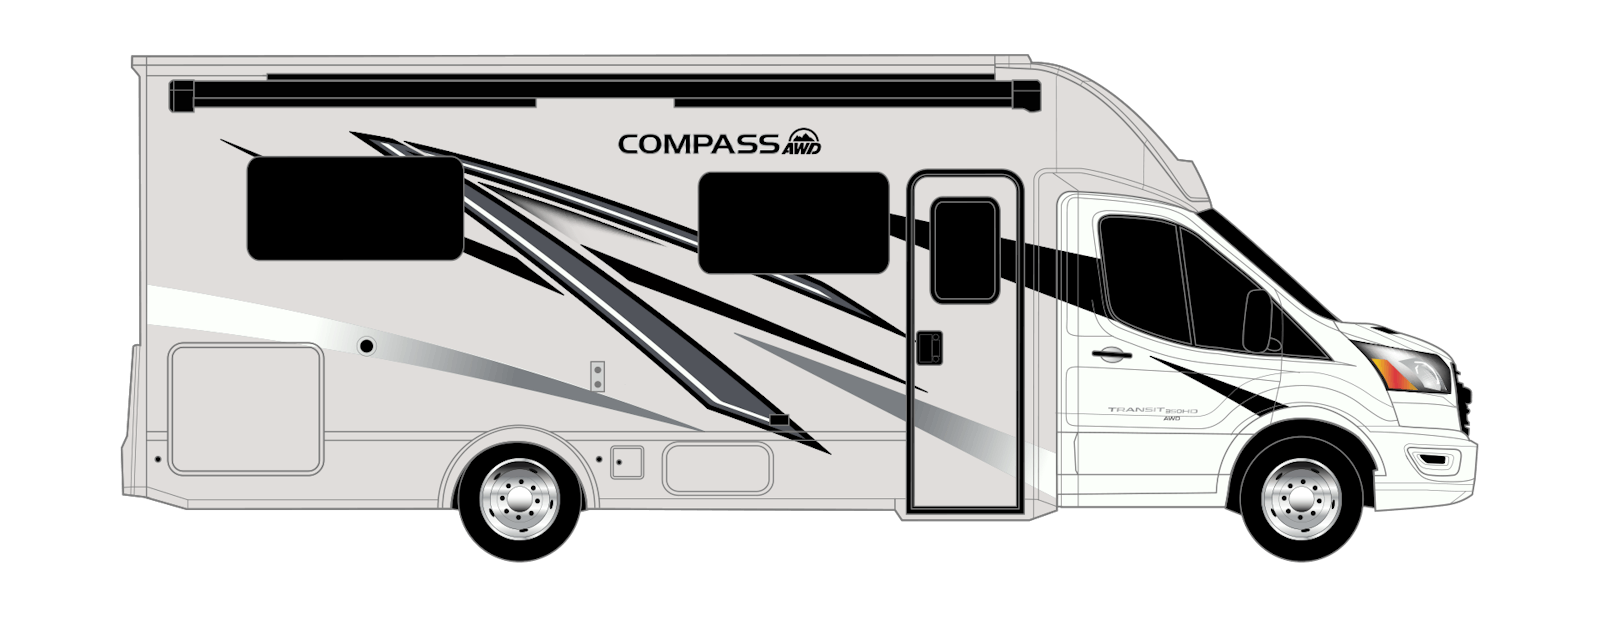 Compass AWD Black Ice